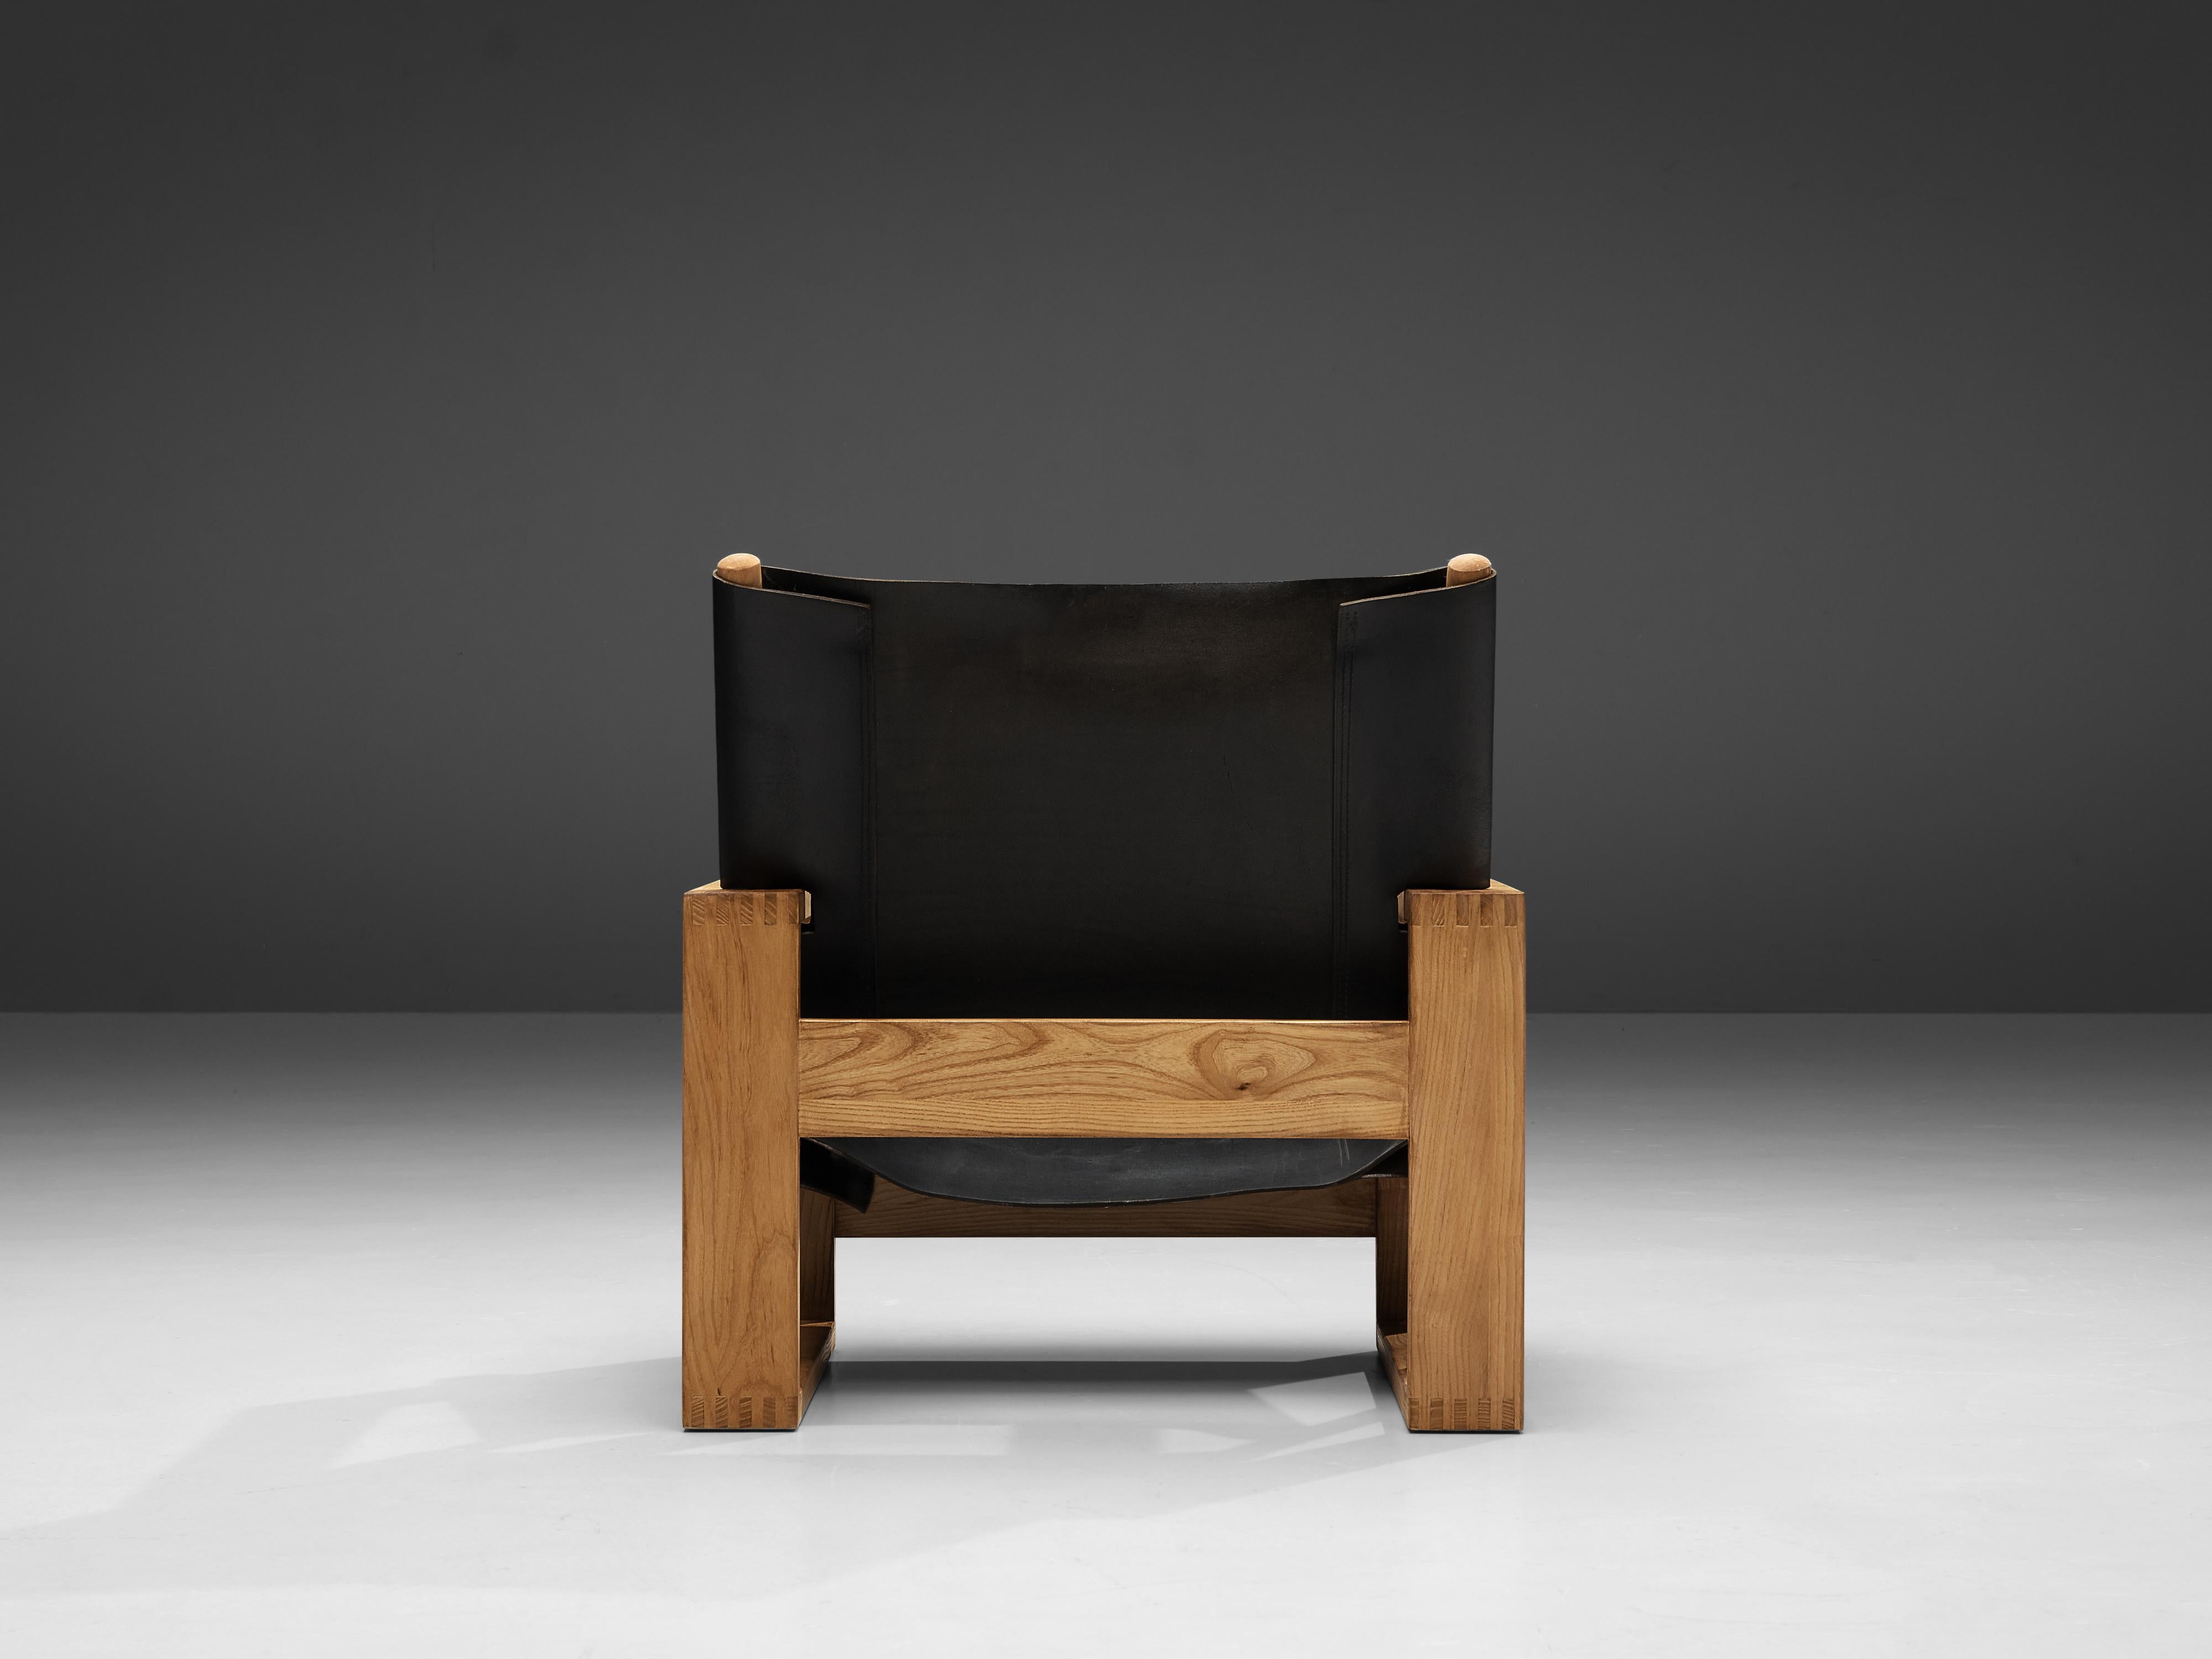 Ate van Apeldoorn Lounge Chair in Ash and Black Leather 1